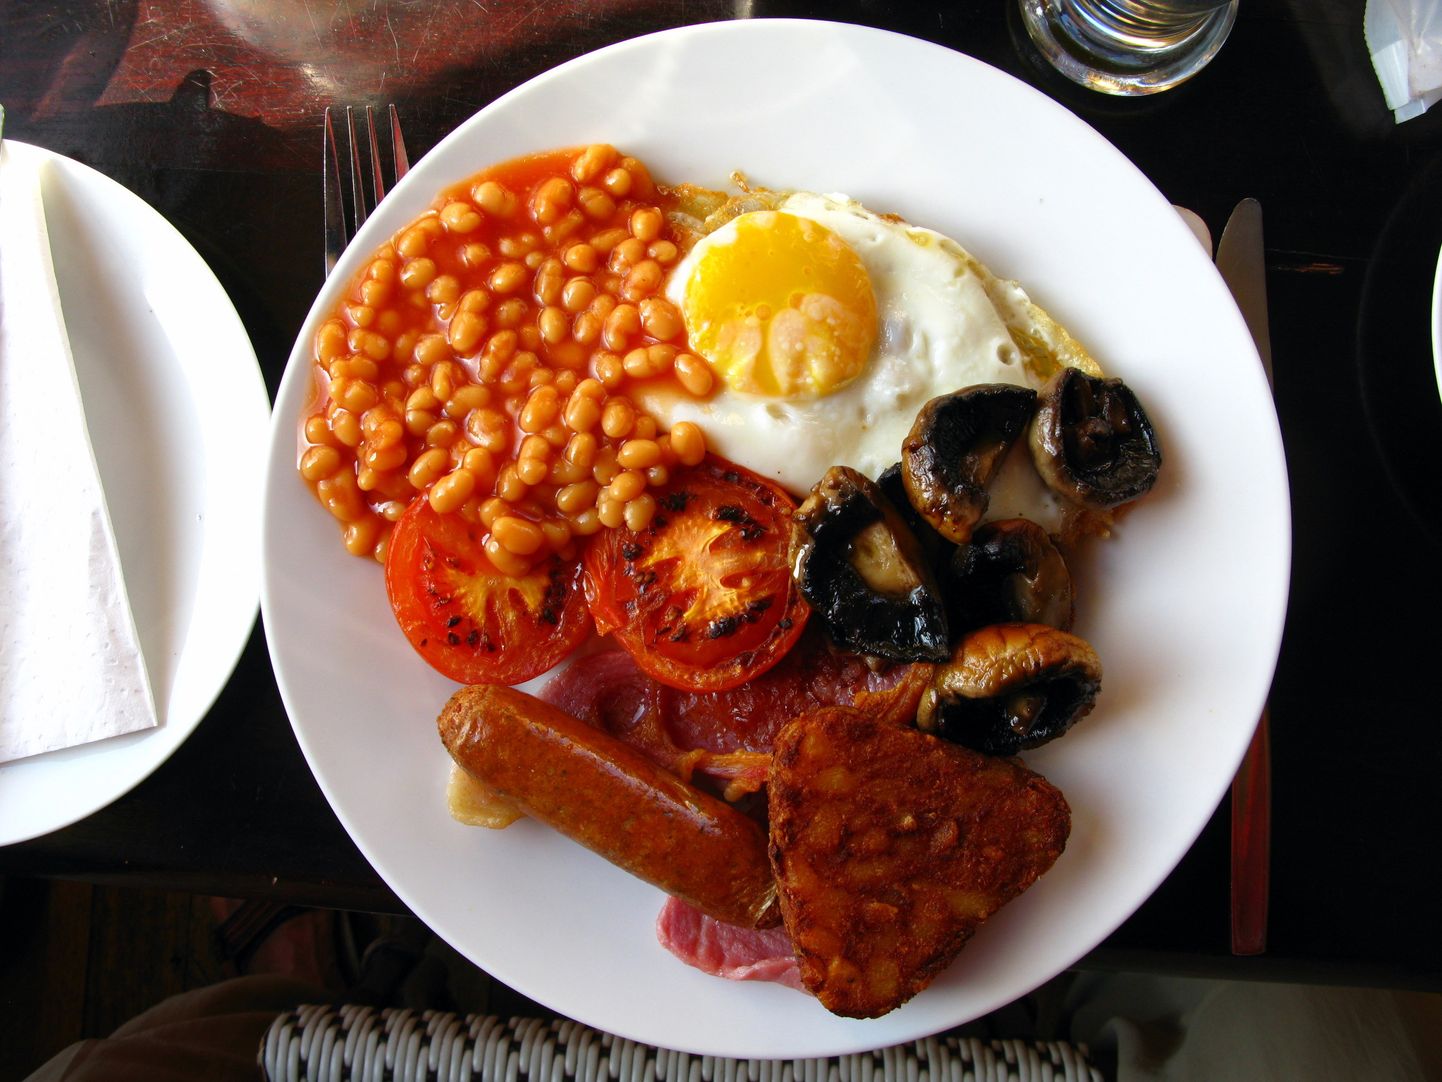 Klassikaline inglise hommikusöök sisaldab muuhulgas ube, tomatit, praemuna, vorstikesi ja seeni.